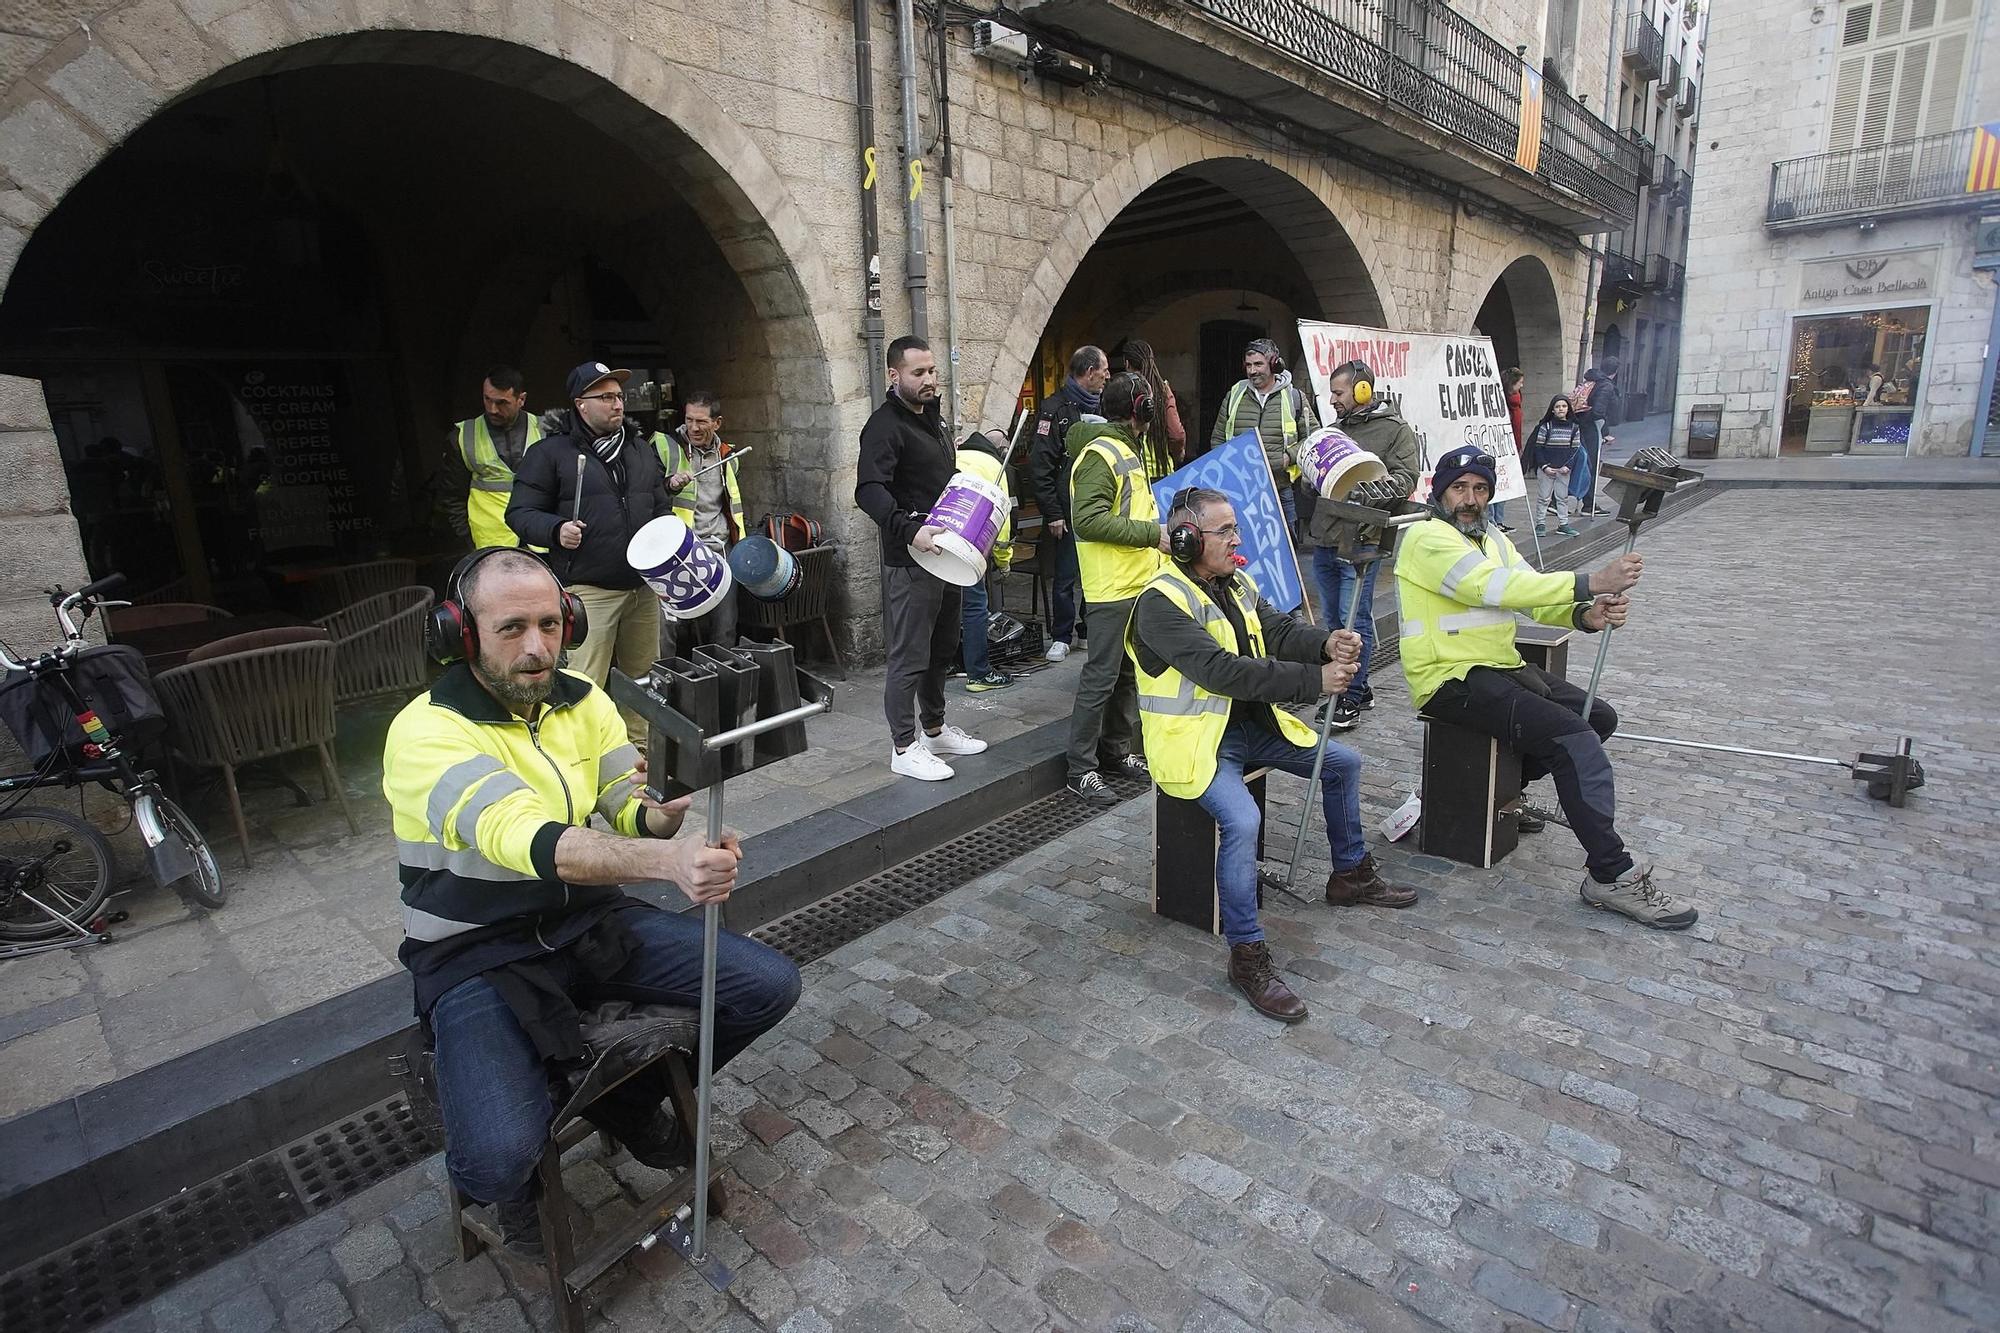 Tres protestes simultànies marquen el ple de Girona